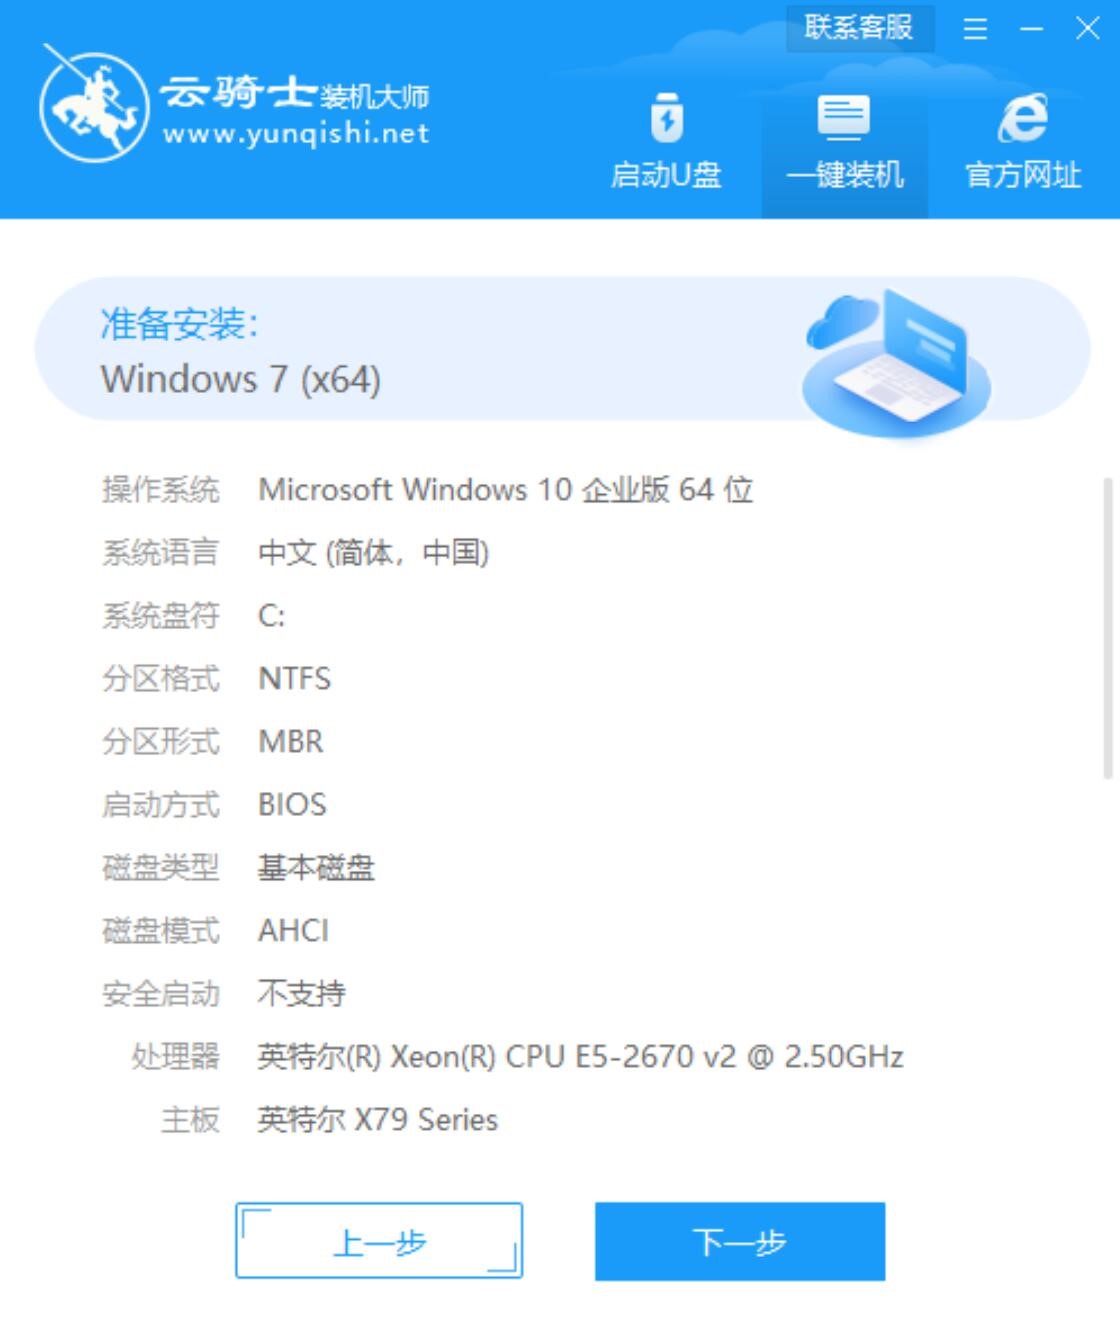 新戴尔笔记本专用系统 GHOST windows7 x32 SP1 装机旗舰版下载 V2021.01(6)